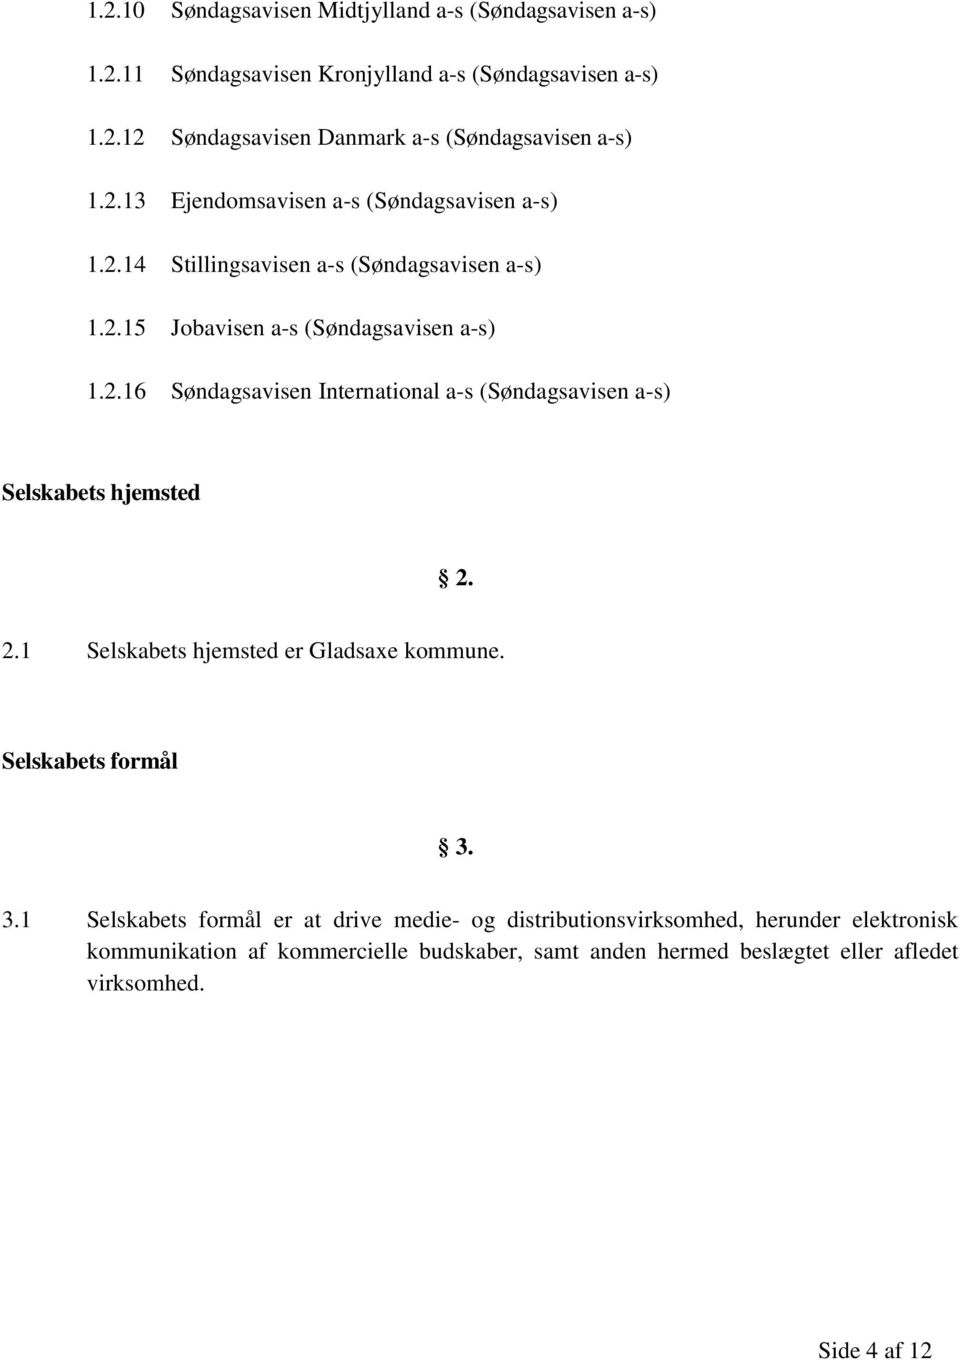 2.1 Selskabets hjemsted er Gladsaxe kommune. Selskabets formål 3.